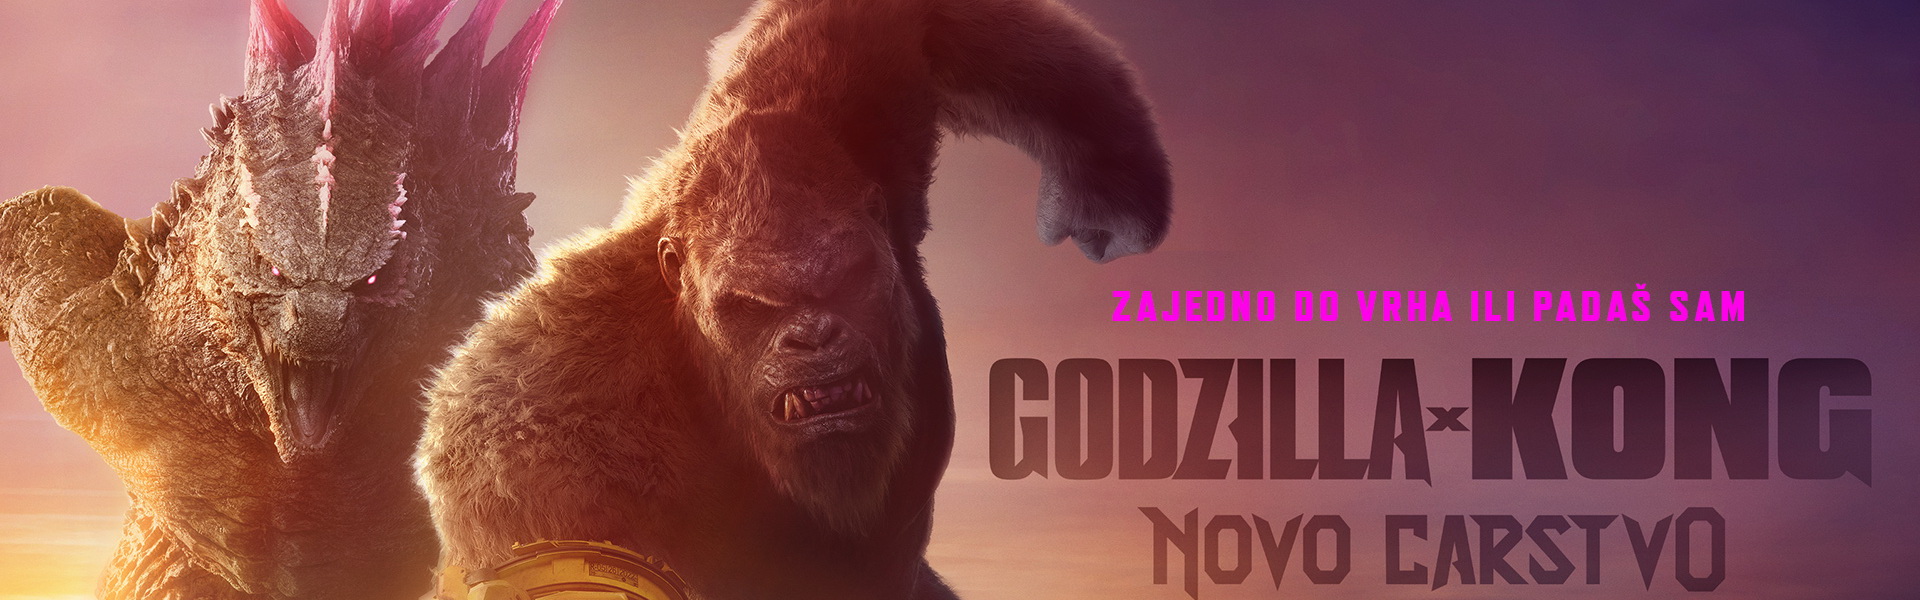 GODZILLA X KONG: NOVO CARSTVO / Godzilla x Kong: The New Empire